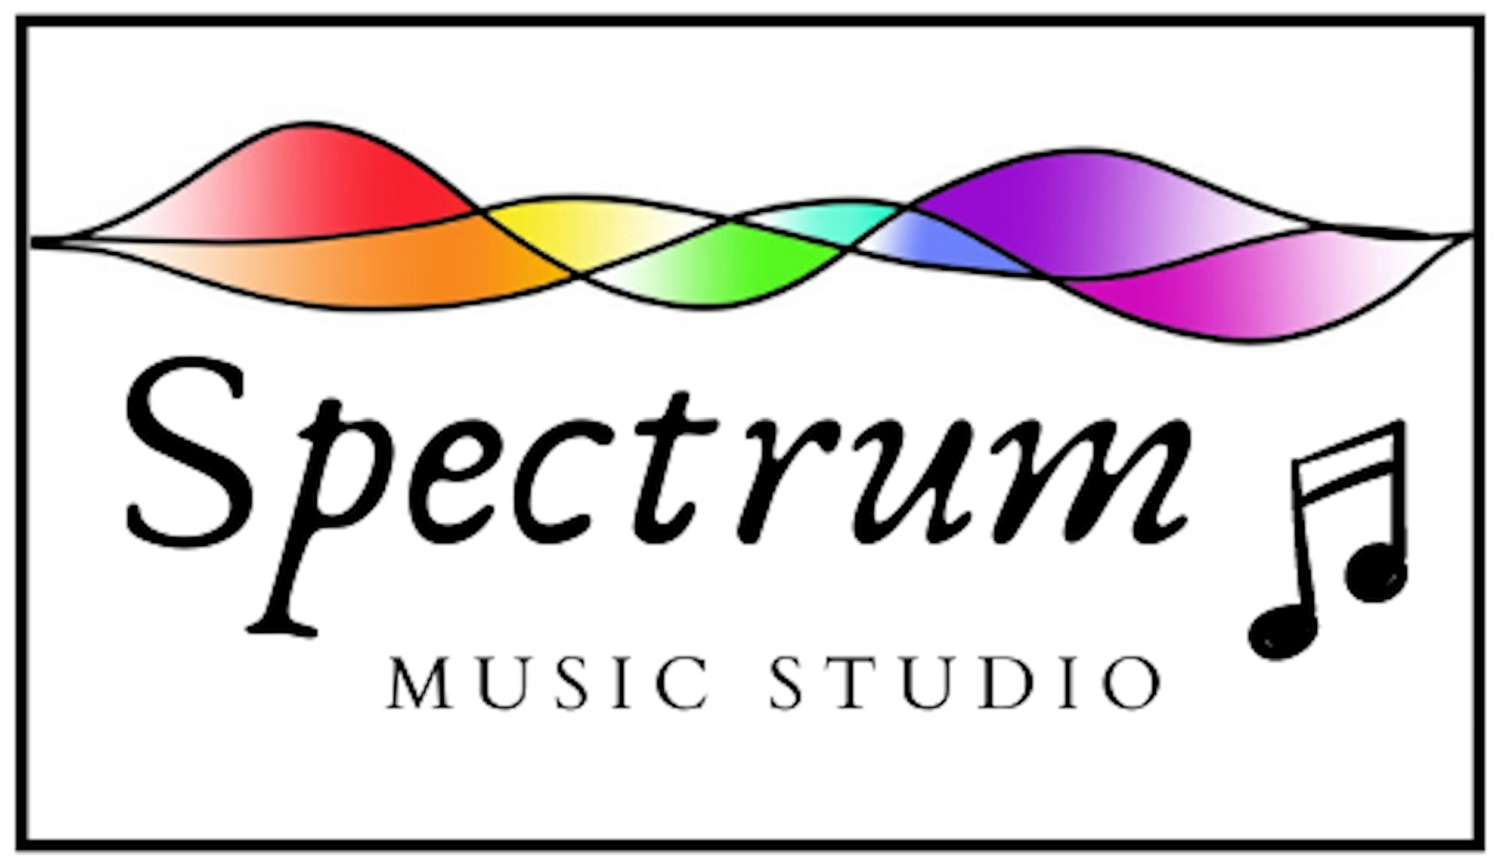 Music Spectrum